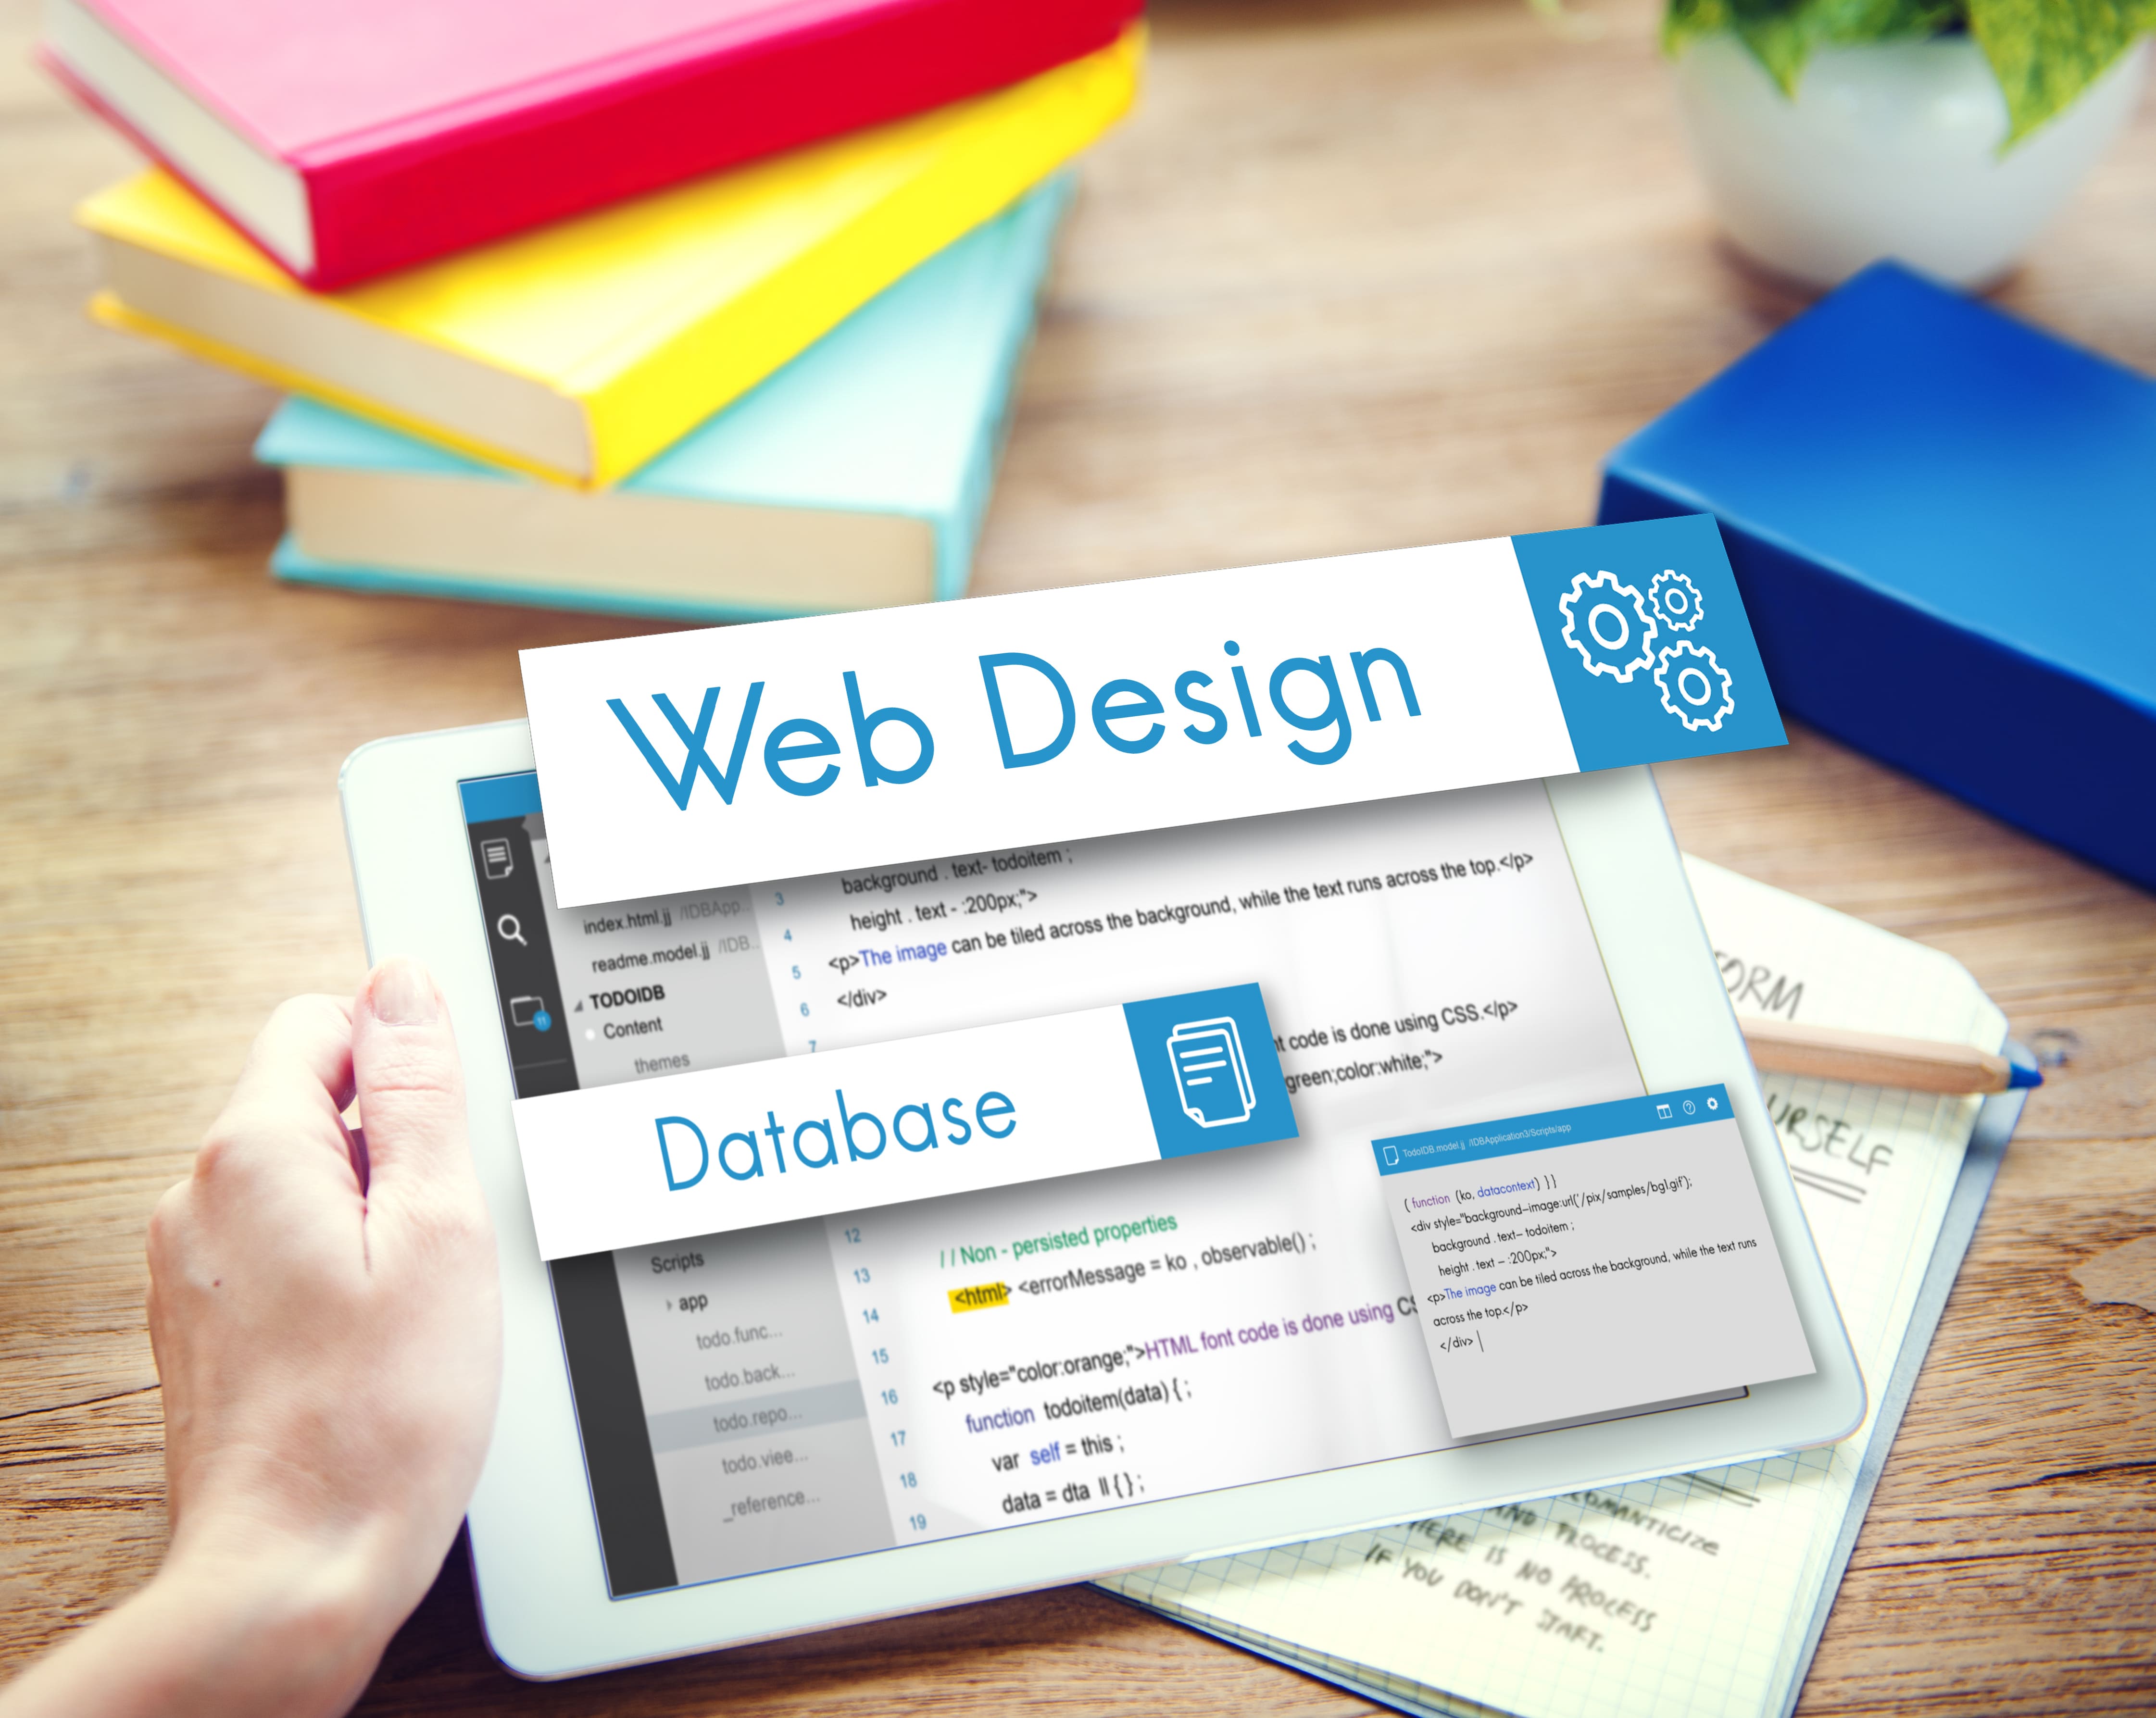 Diploma in Web Design